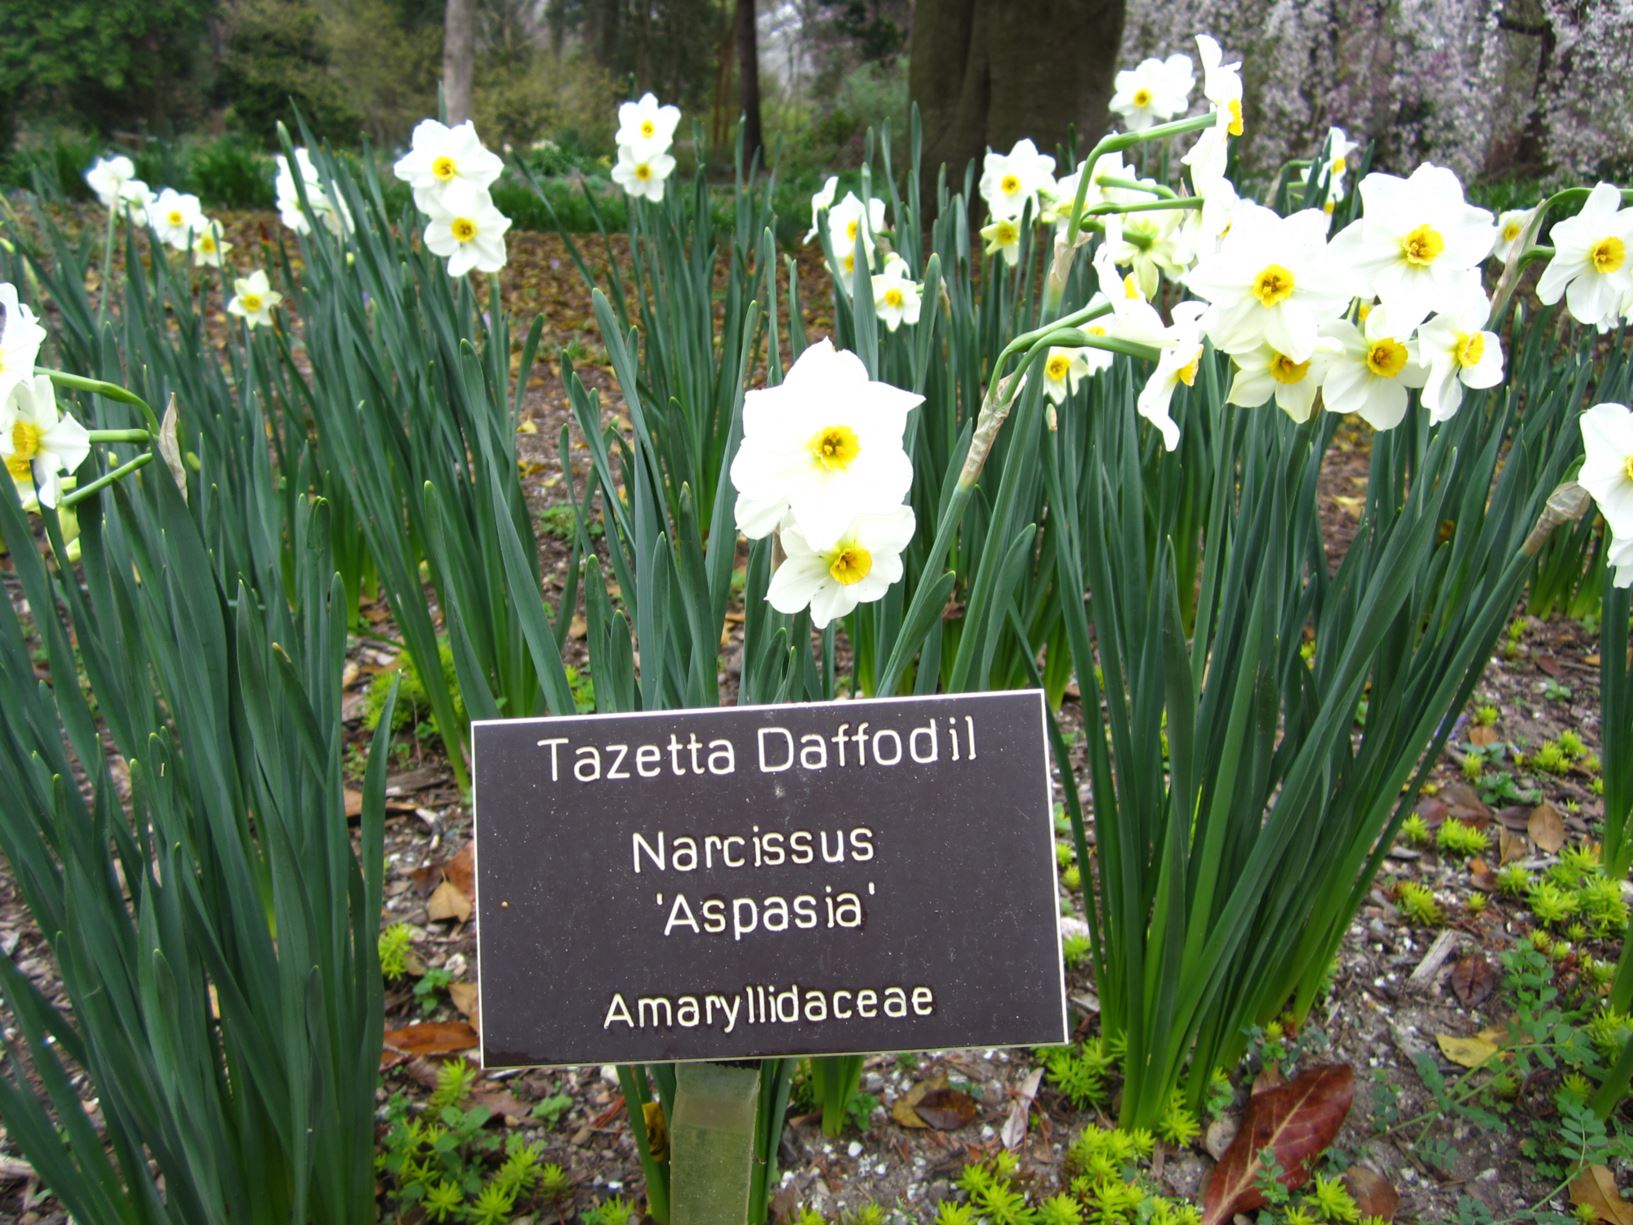 Narcissus 'Aspasia' - tazetta daffodil